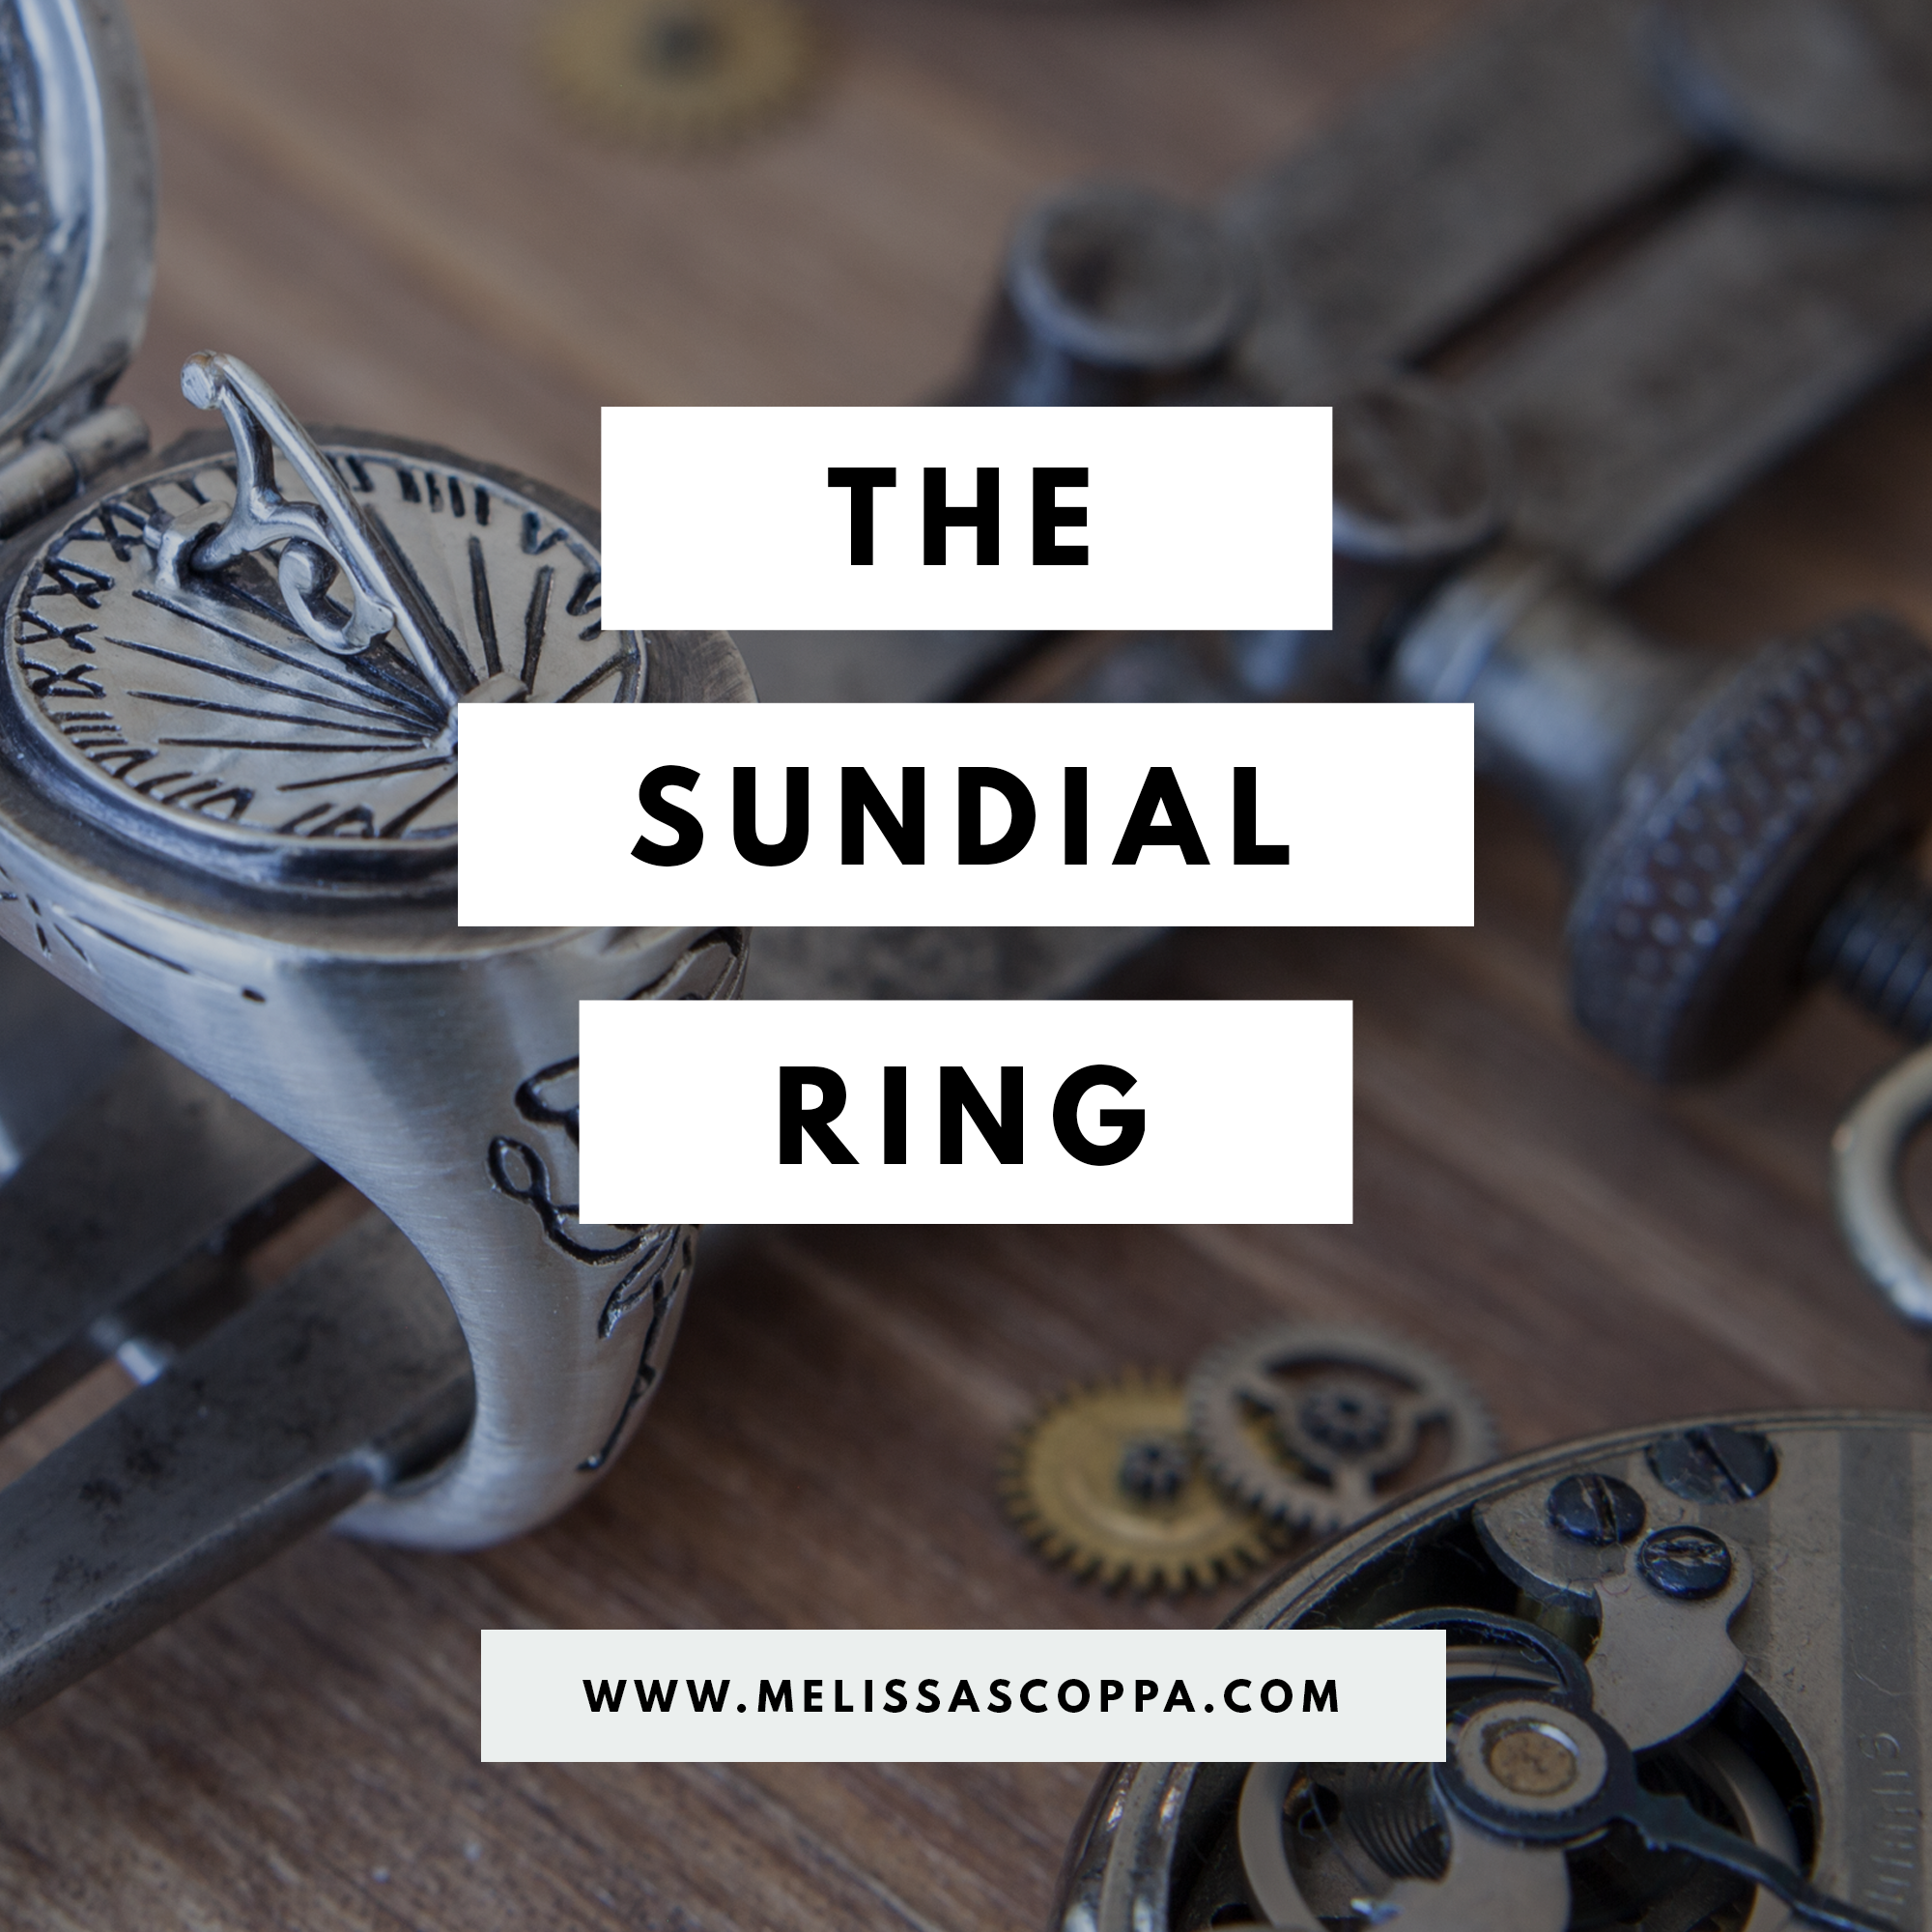 The Sundial Ring